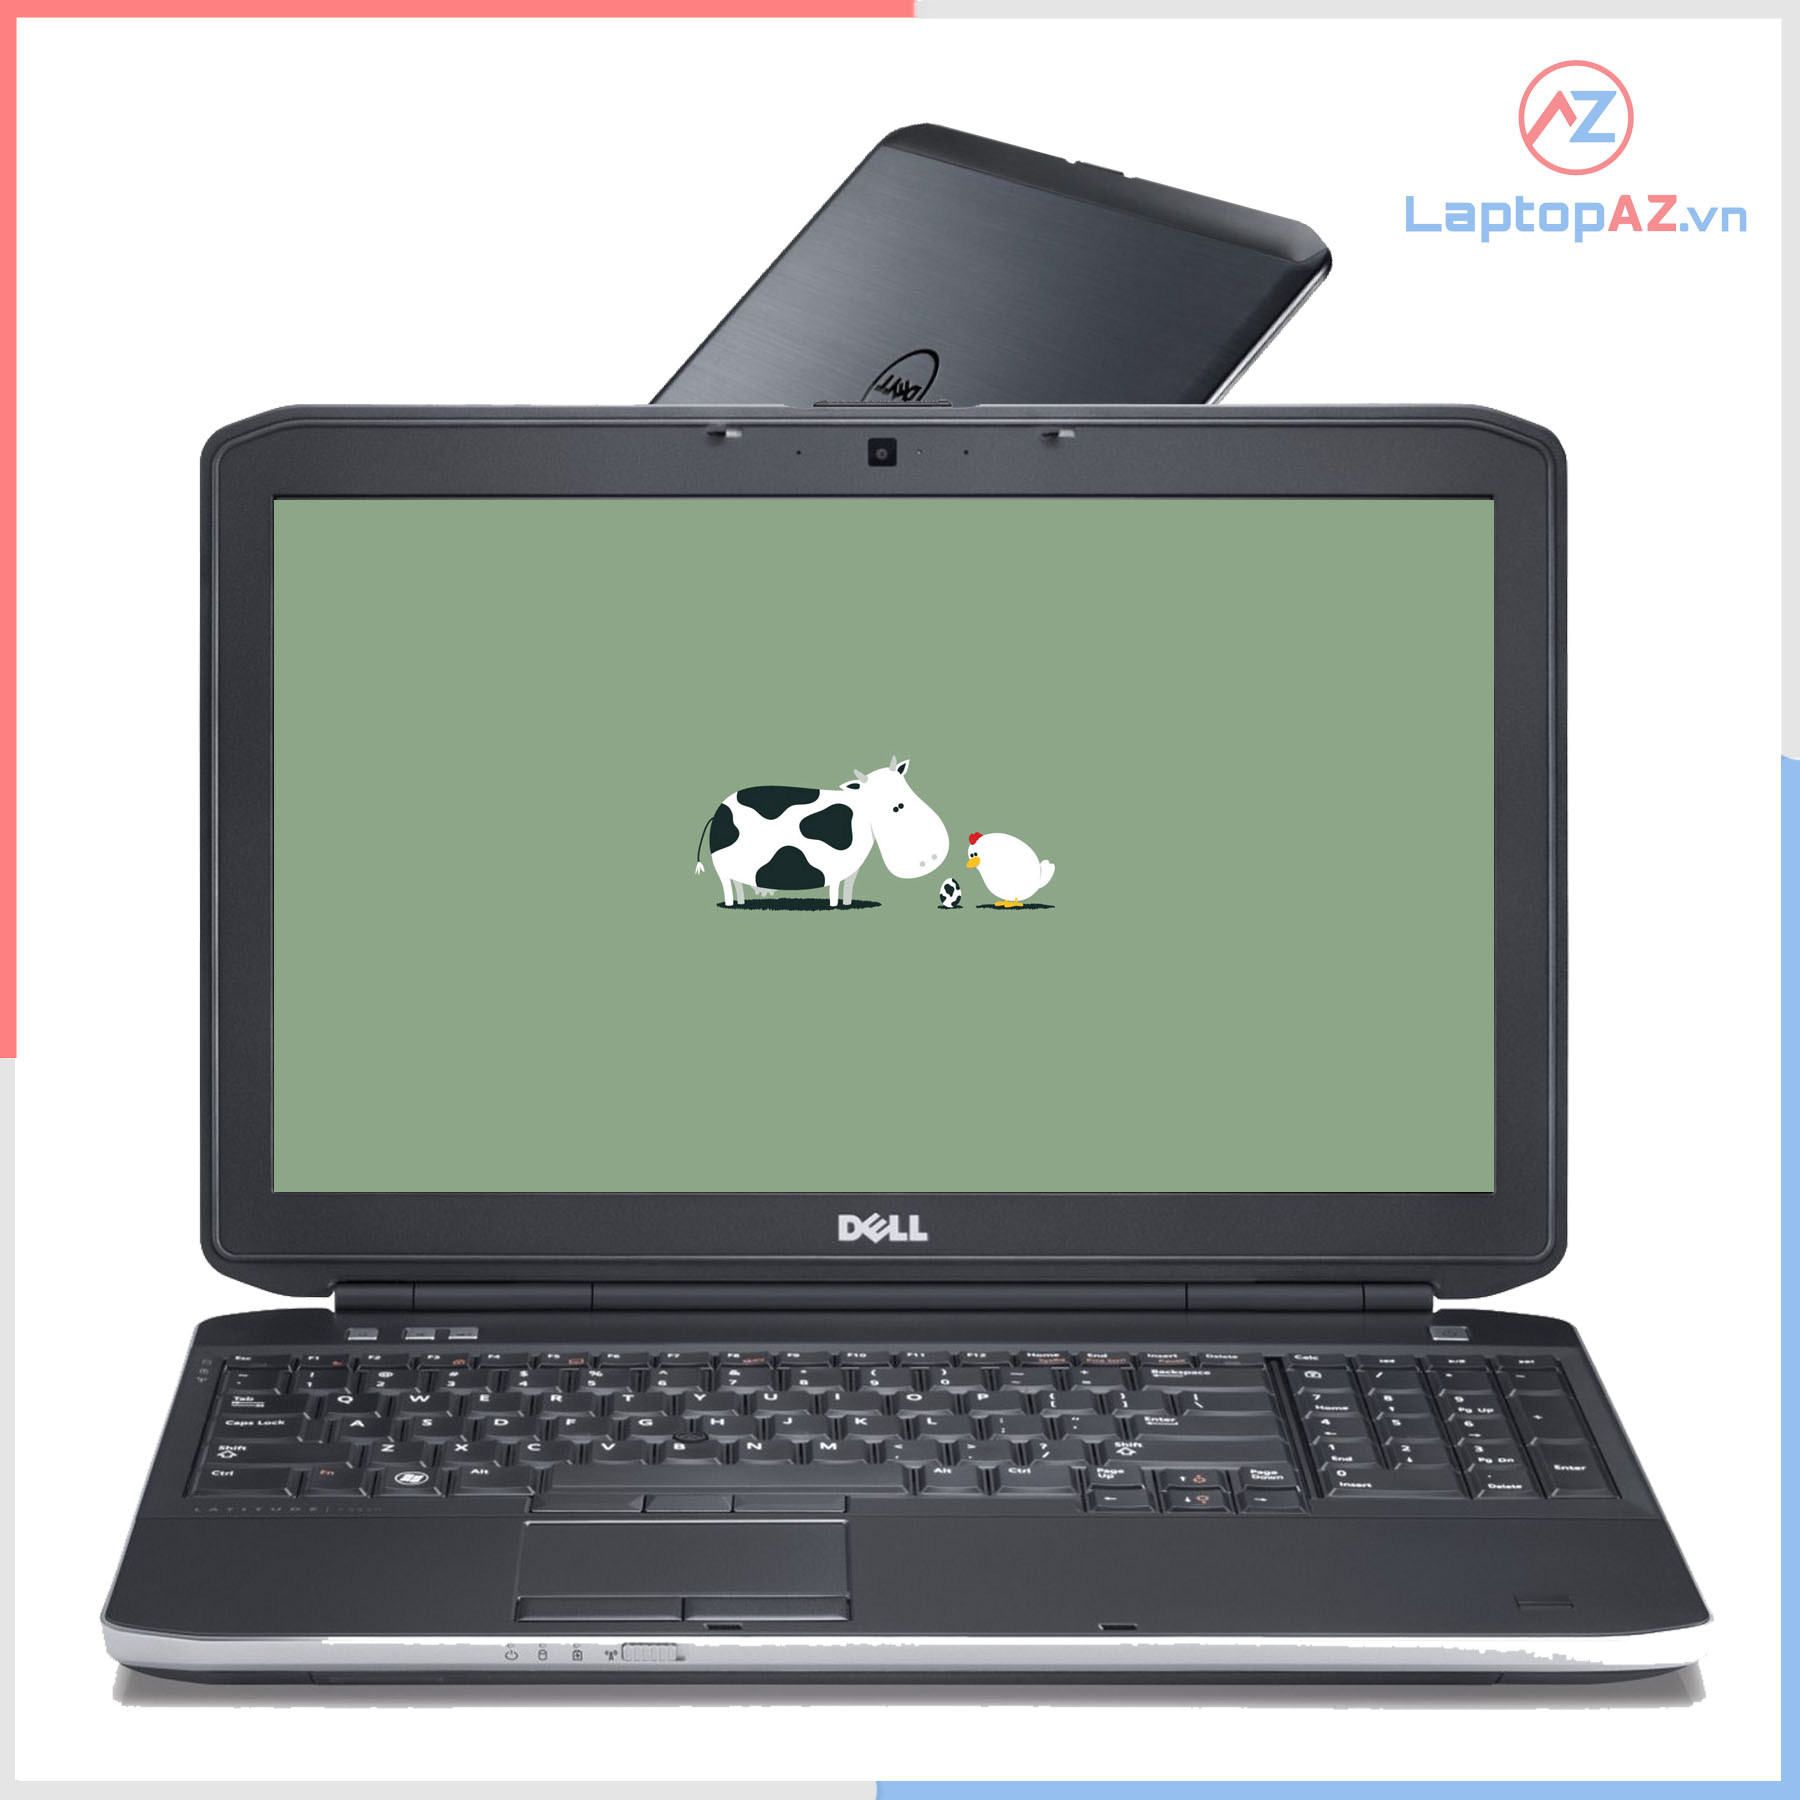 Laptop Dell Latitude E5530 i5 3210M, 4GB, 120GB, Intel HD 4000, 15.6 Inch HD